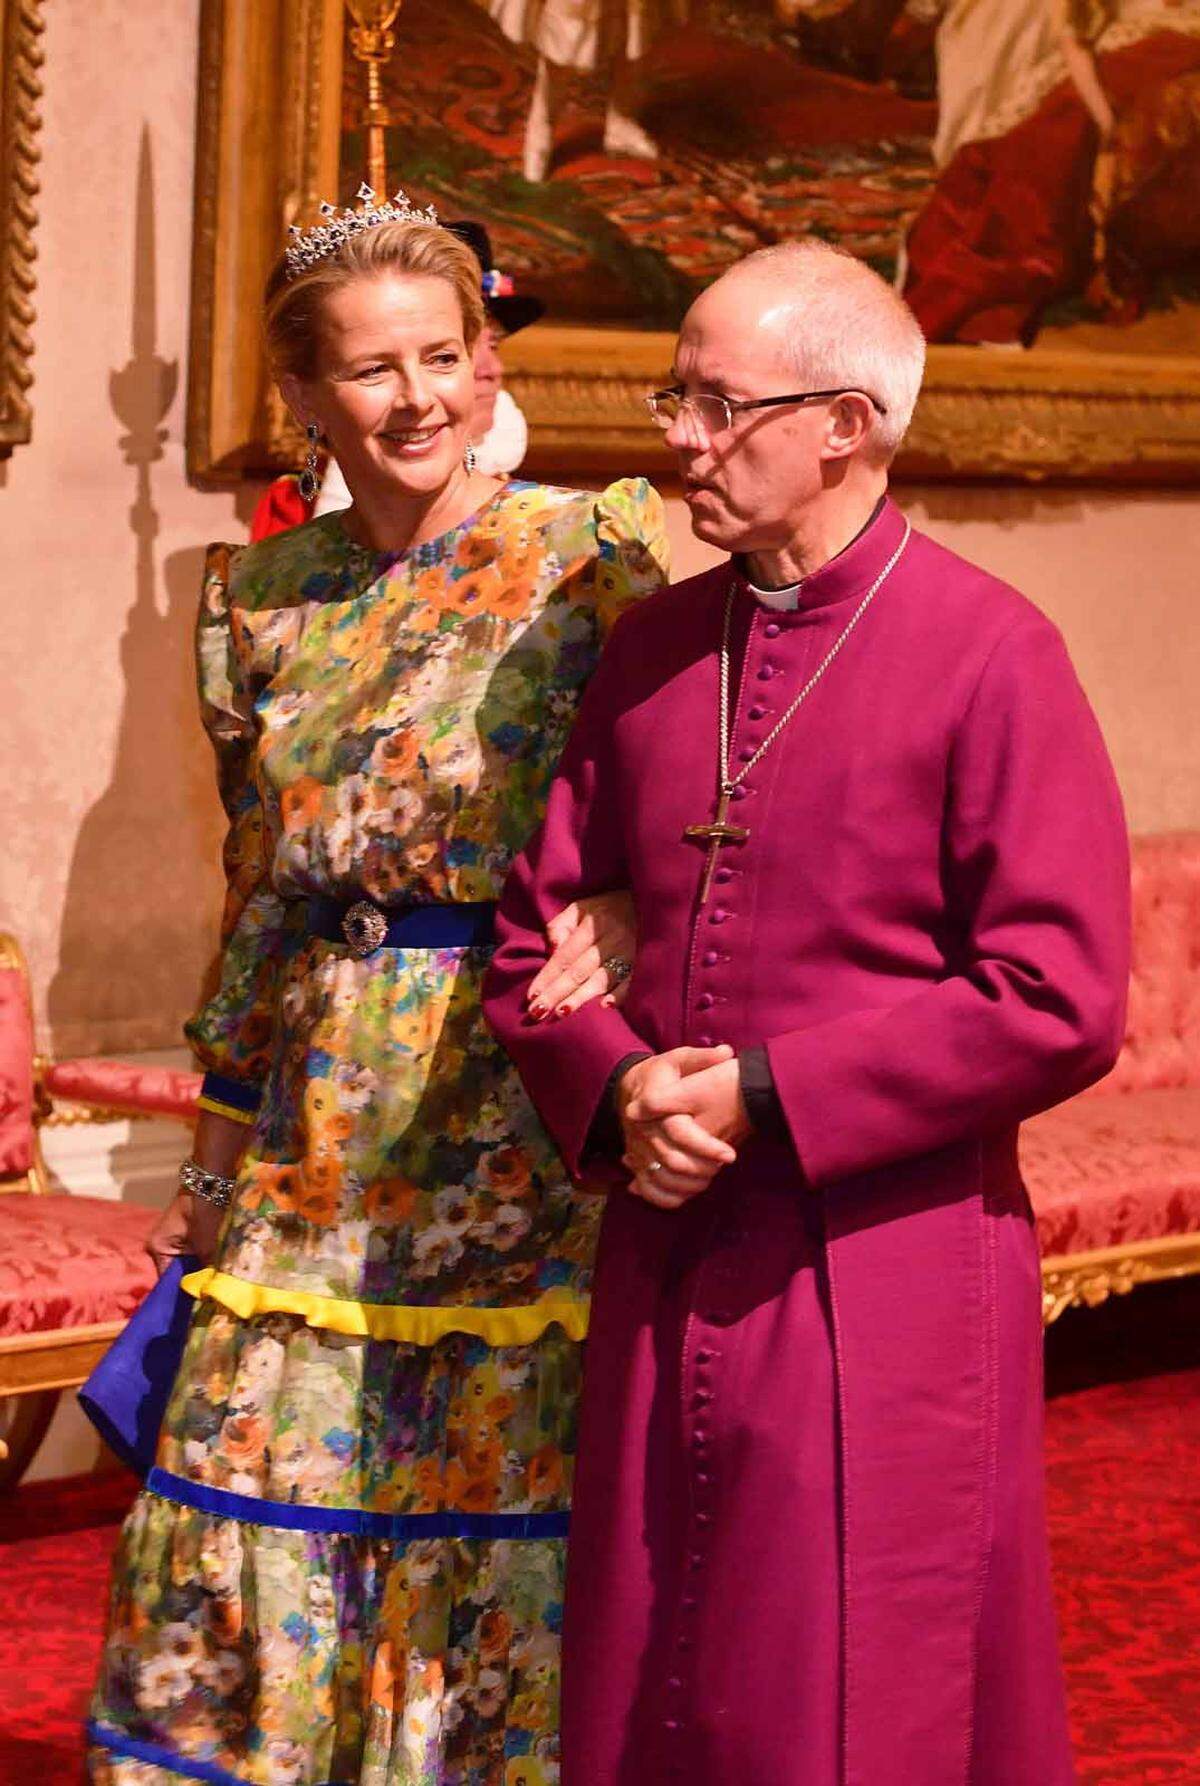 Die in London lebende Prinzessin Mabel von Oranien-Nassau, die Witwe von Prinz Johan Friso, der im August 2013 an den Folgen eines Lawinen-Unfalls in Lech am Arlberg starb, nahm ebenfalls an dem Bankett teil. Sie trat mit Erzbischof Justin Welby ein.    